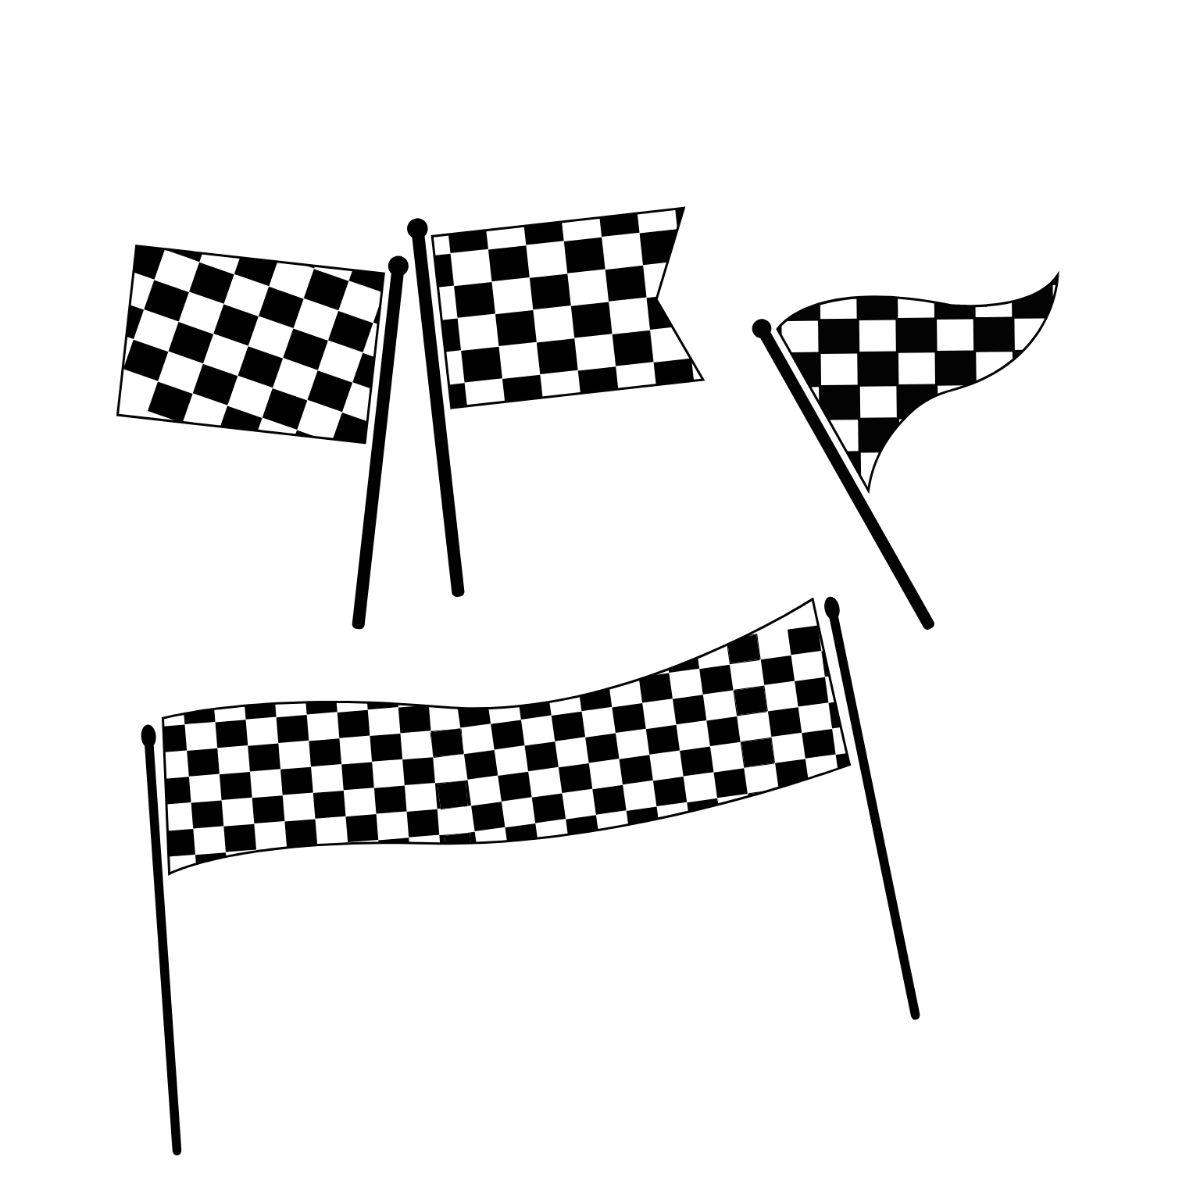 Racing Checkered Flag Border Vector Template